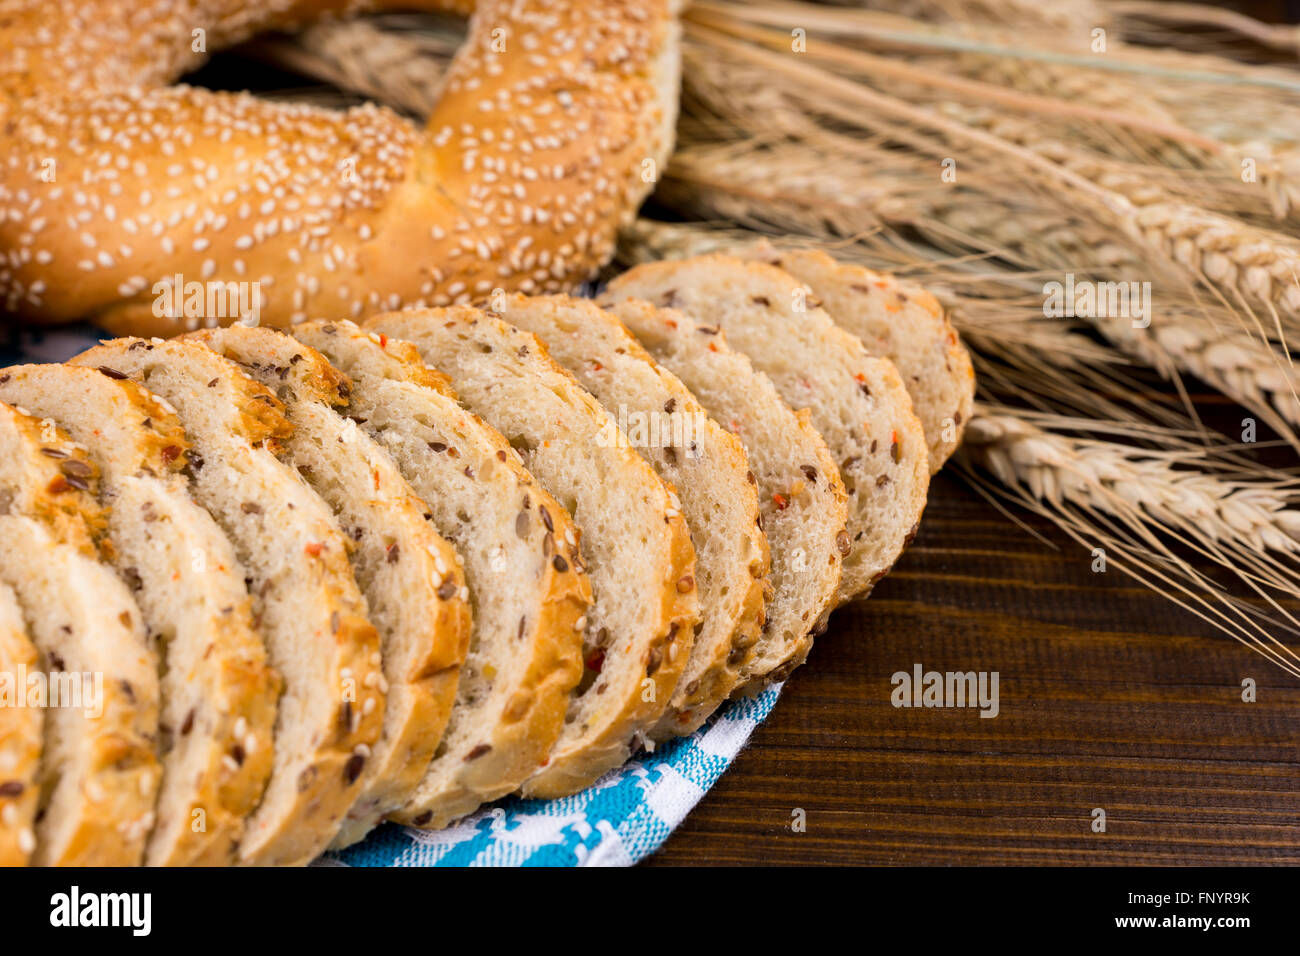 Rodajas de pan integrales con sésamo bagel aparece en una servilleta azul y blanco con espigas de trigo maduro, Vista cercana Foto de stock